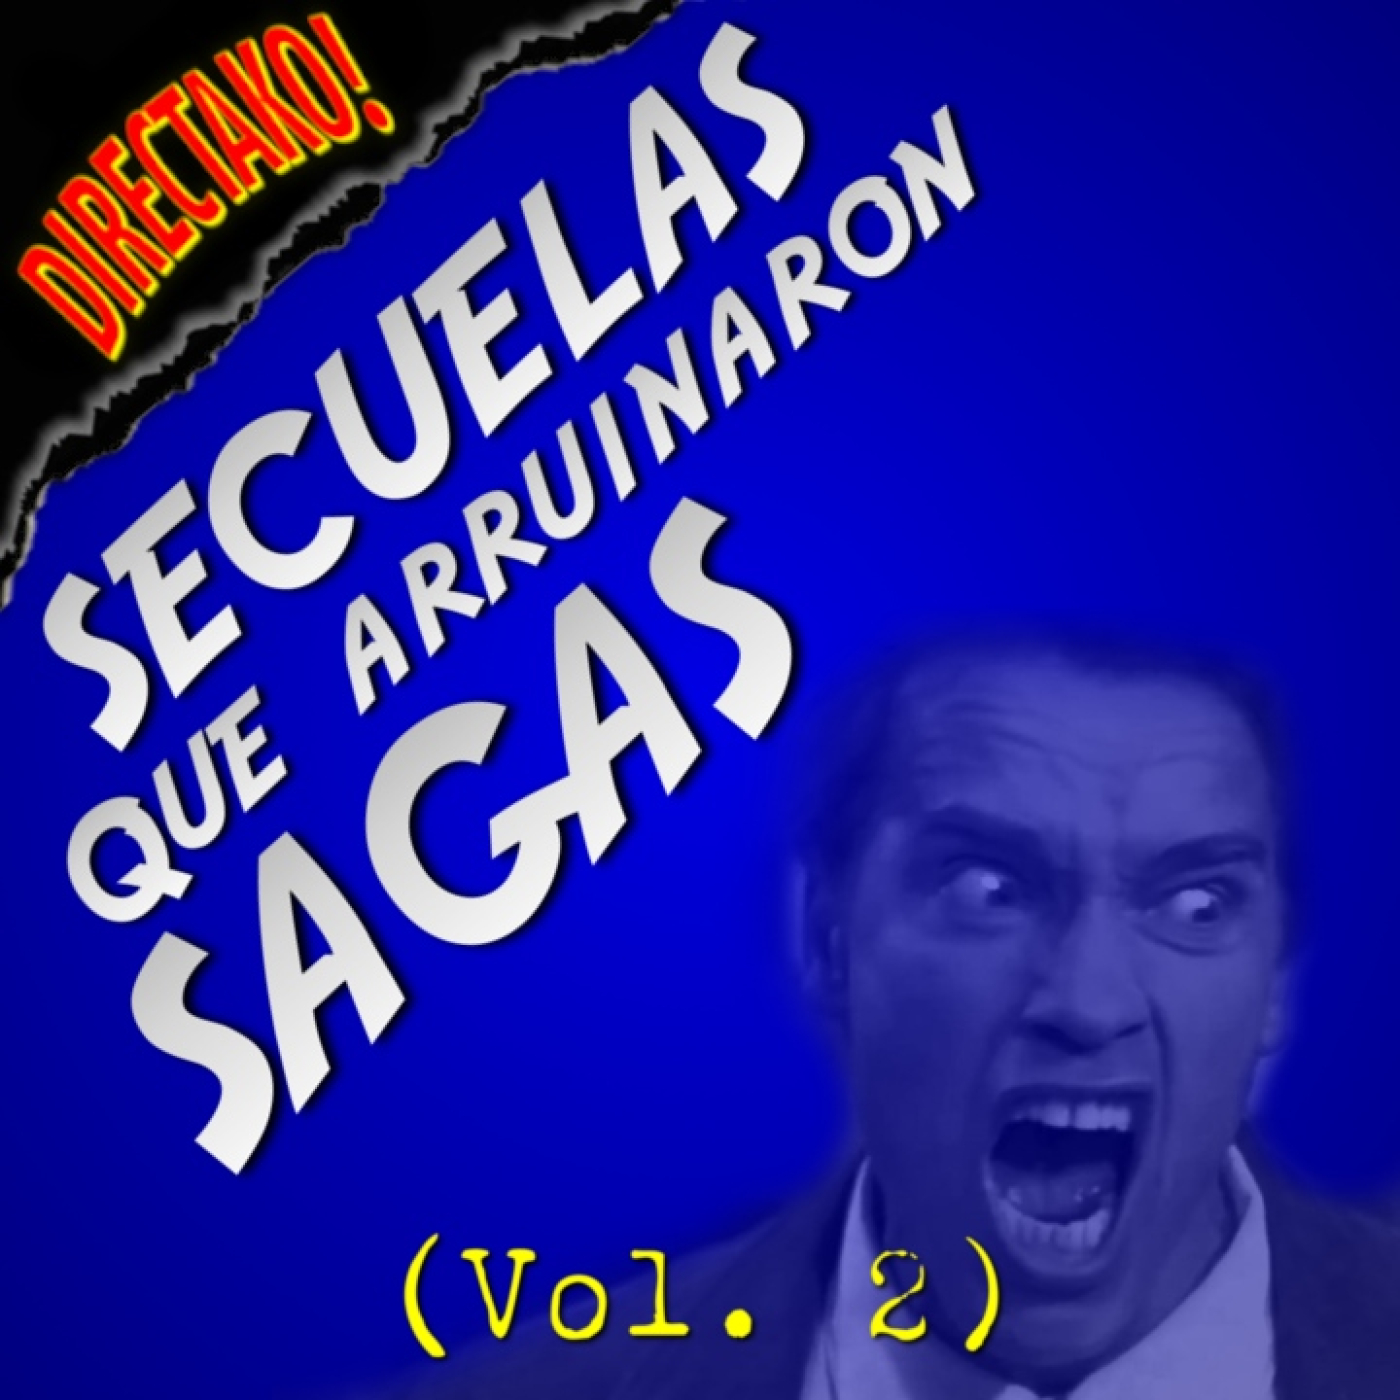 095 - Secuelas que arruinaron sagas (Vol.2)